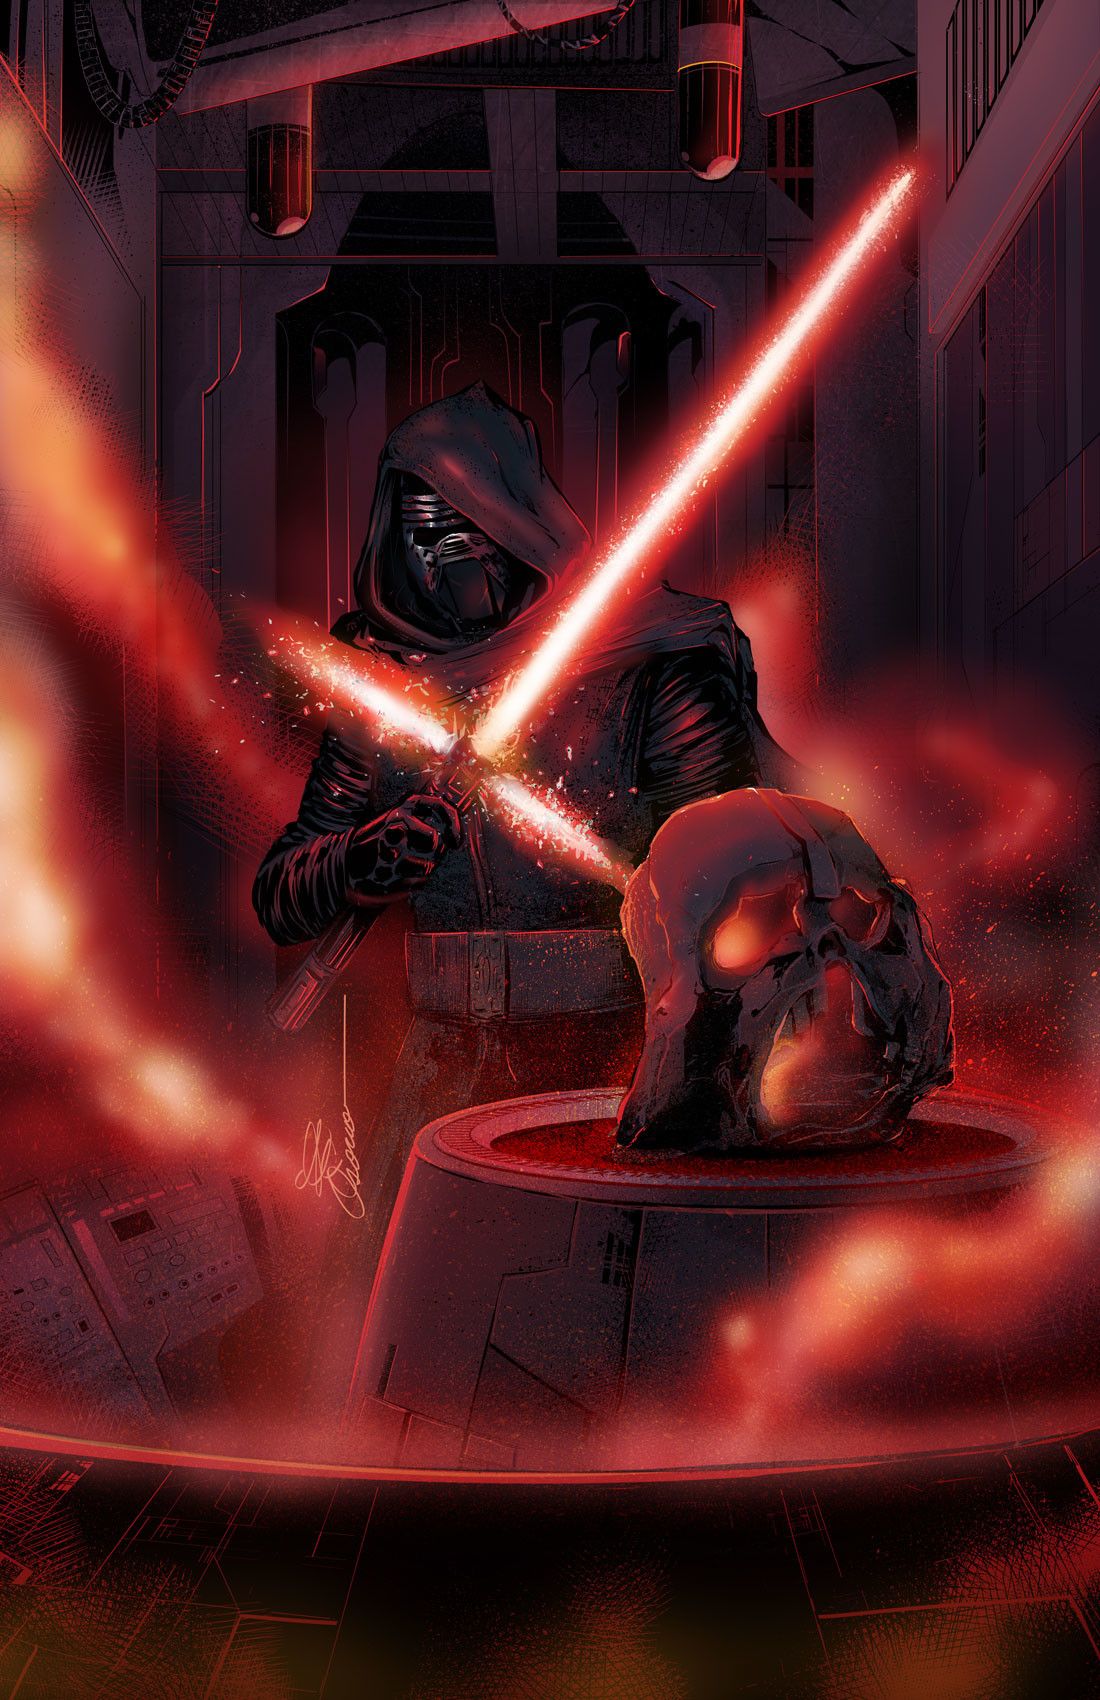 Kylo Ren Darth Vader Wallpapers